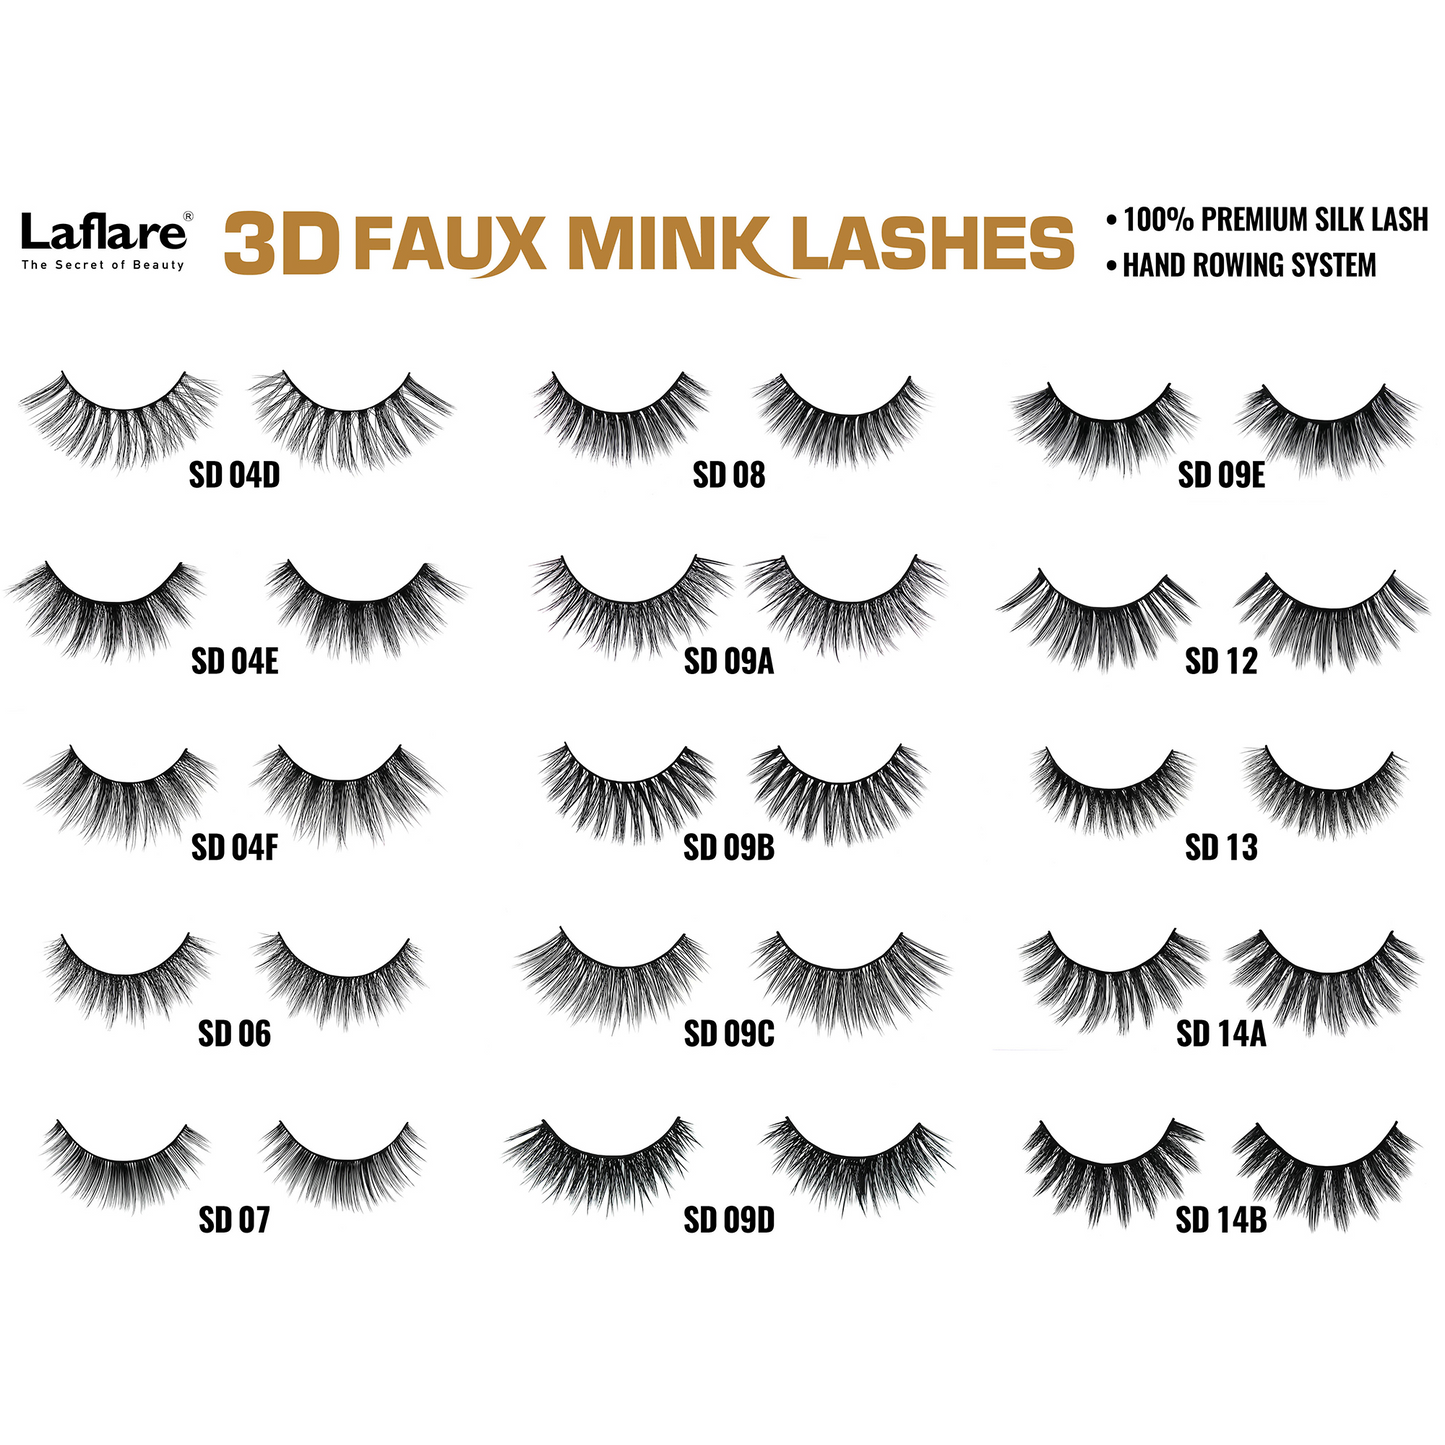 LAFLARE 3D FAUX MINK LASHES - SD24K